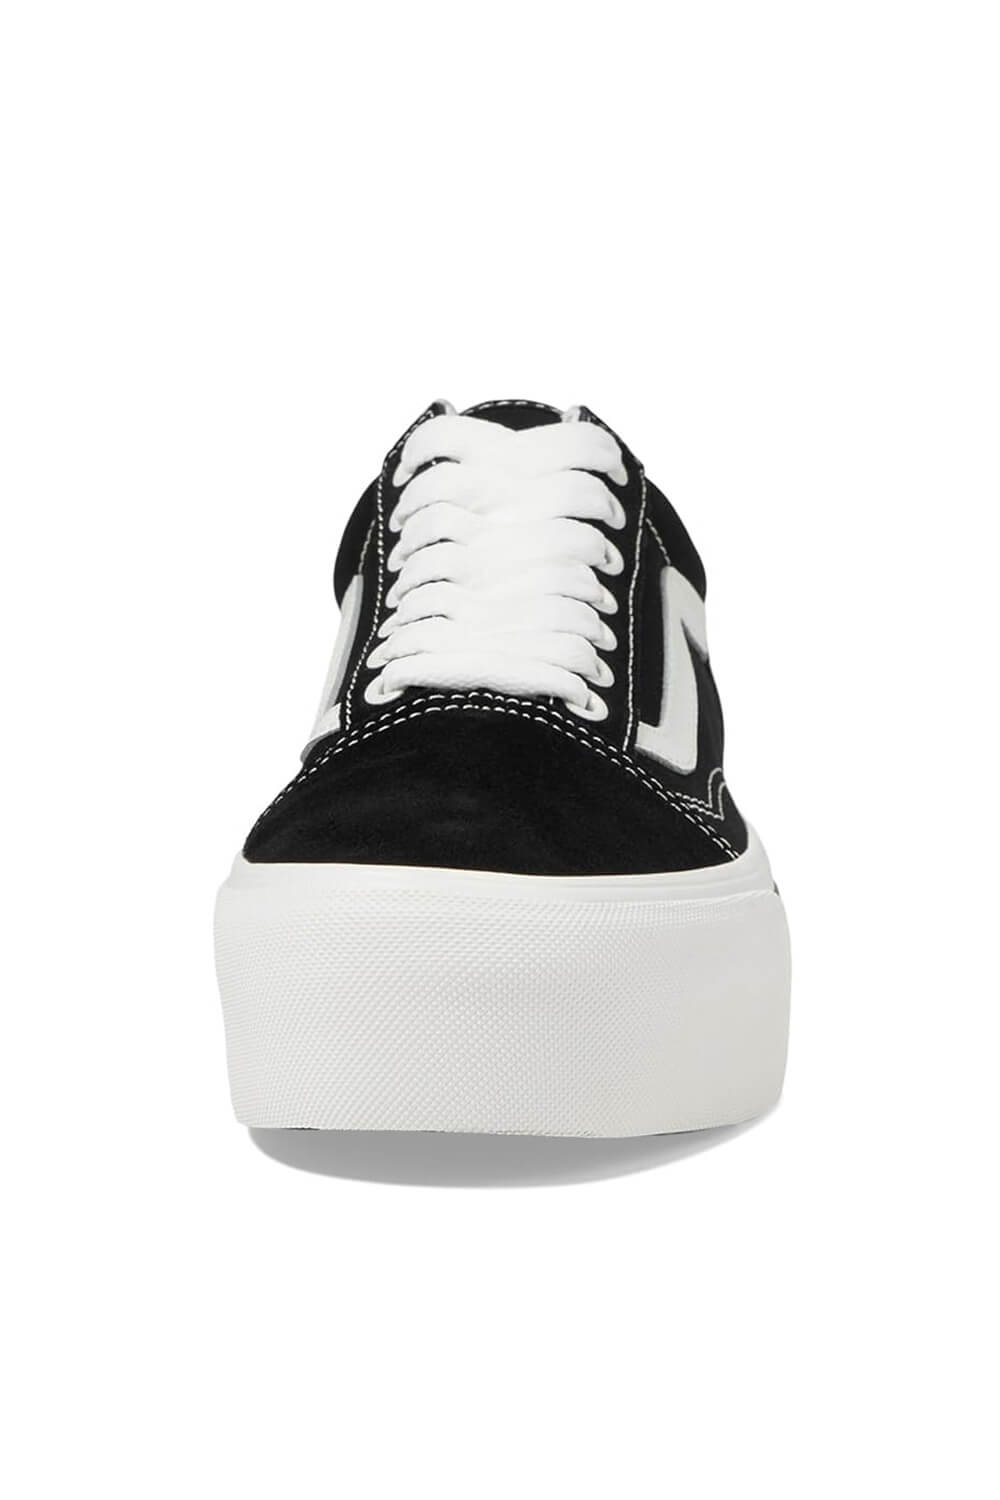 Vans Old Skool Stackform Sneakers for Women in Black/White